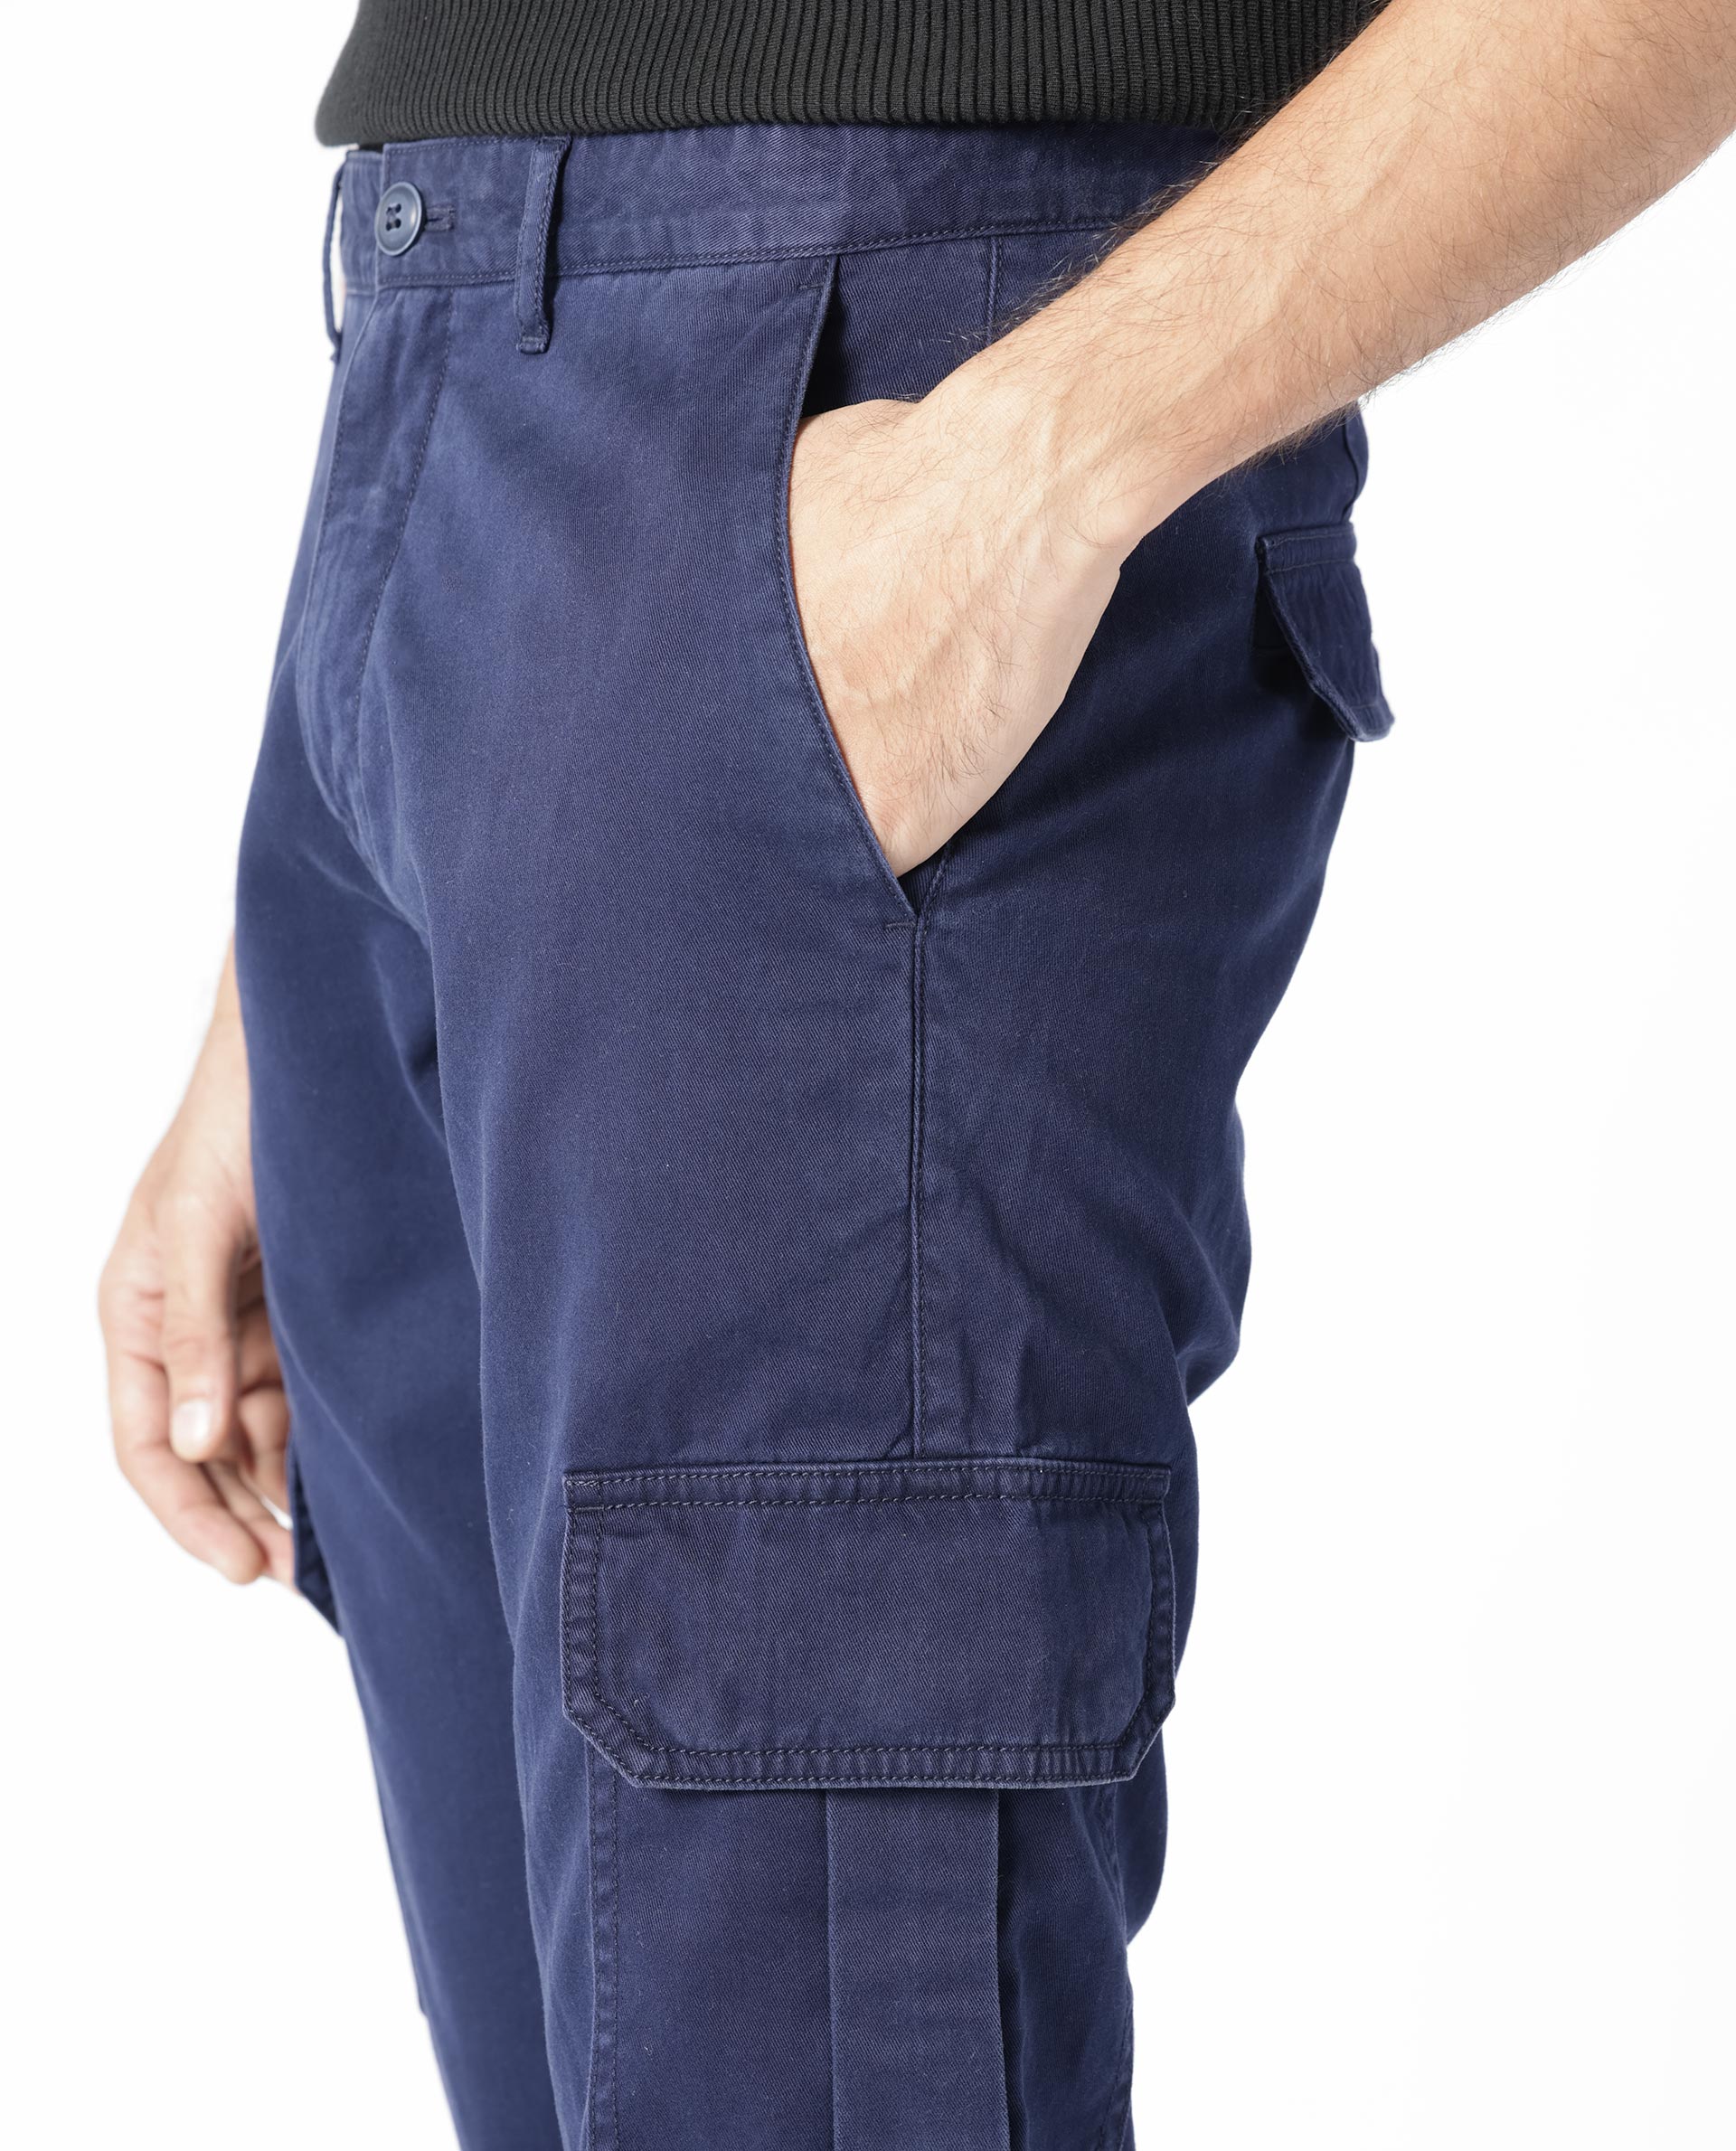 Timberland Pro Interax Pants - A4QTA – JobSite Workwear